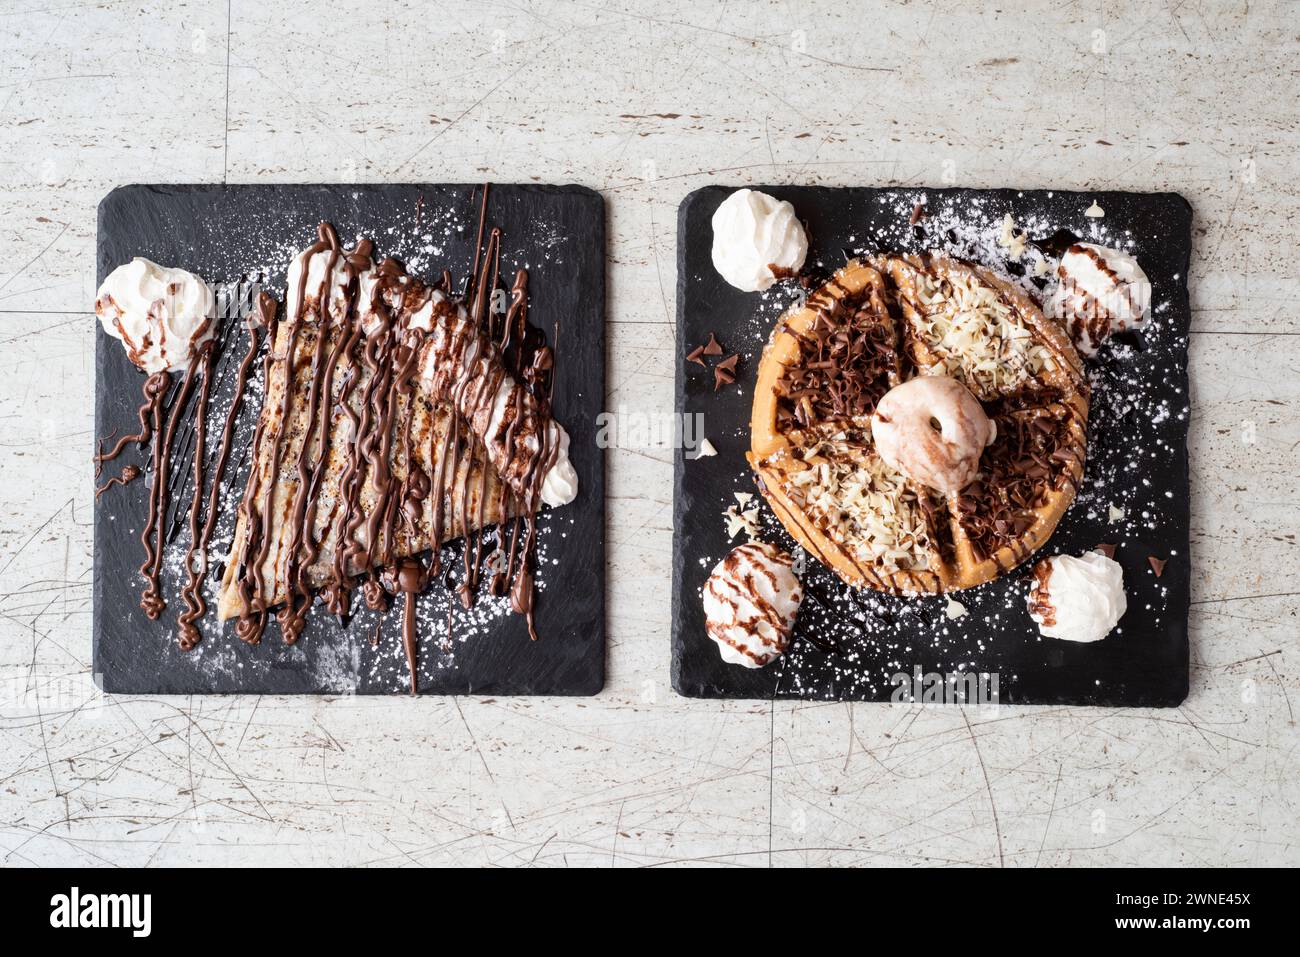 Chocoholic Waffel, Chocolate Chip Cookie Teig und ein Nutella Crepe – Dessertwahl auf Schokoladenbasis serviert mit Vanilleeis oder frischer Sahne Stockfoto